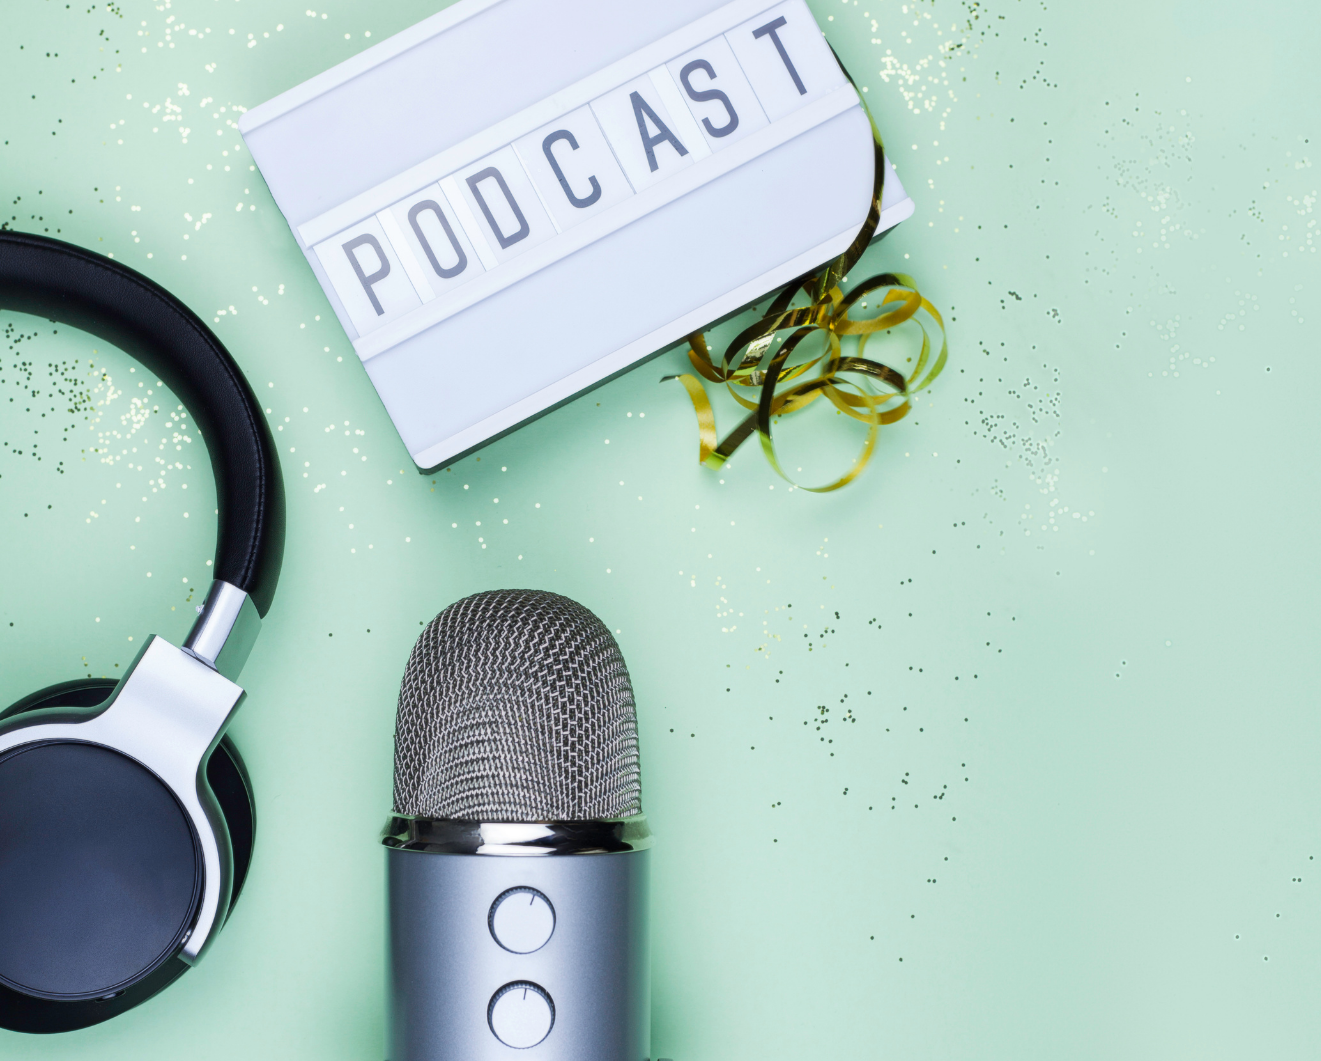 Ein Mikrofon, ein Kopfhörer und ein Schild, mit dem Wort "Podcast" drauf